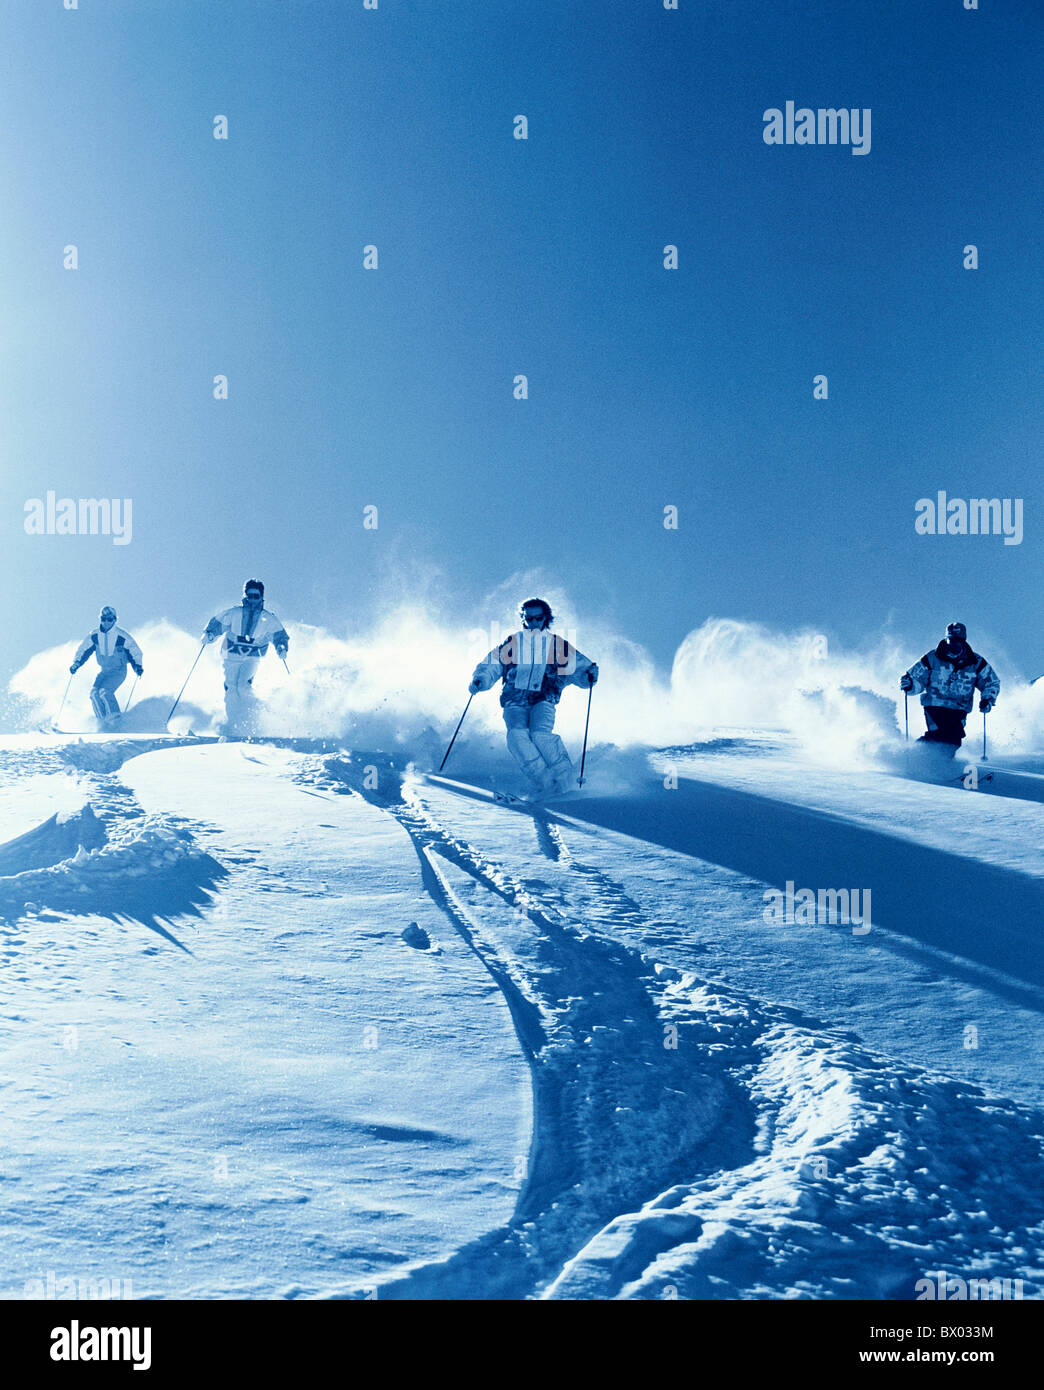 Montagna sci carving monocromatica di gruppo di sci da neve sci sport neve profonda neve profonda la guida inverno s Foto Stock